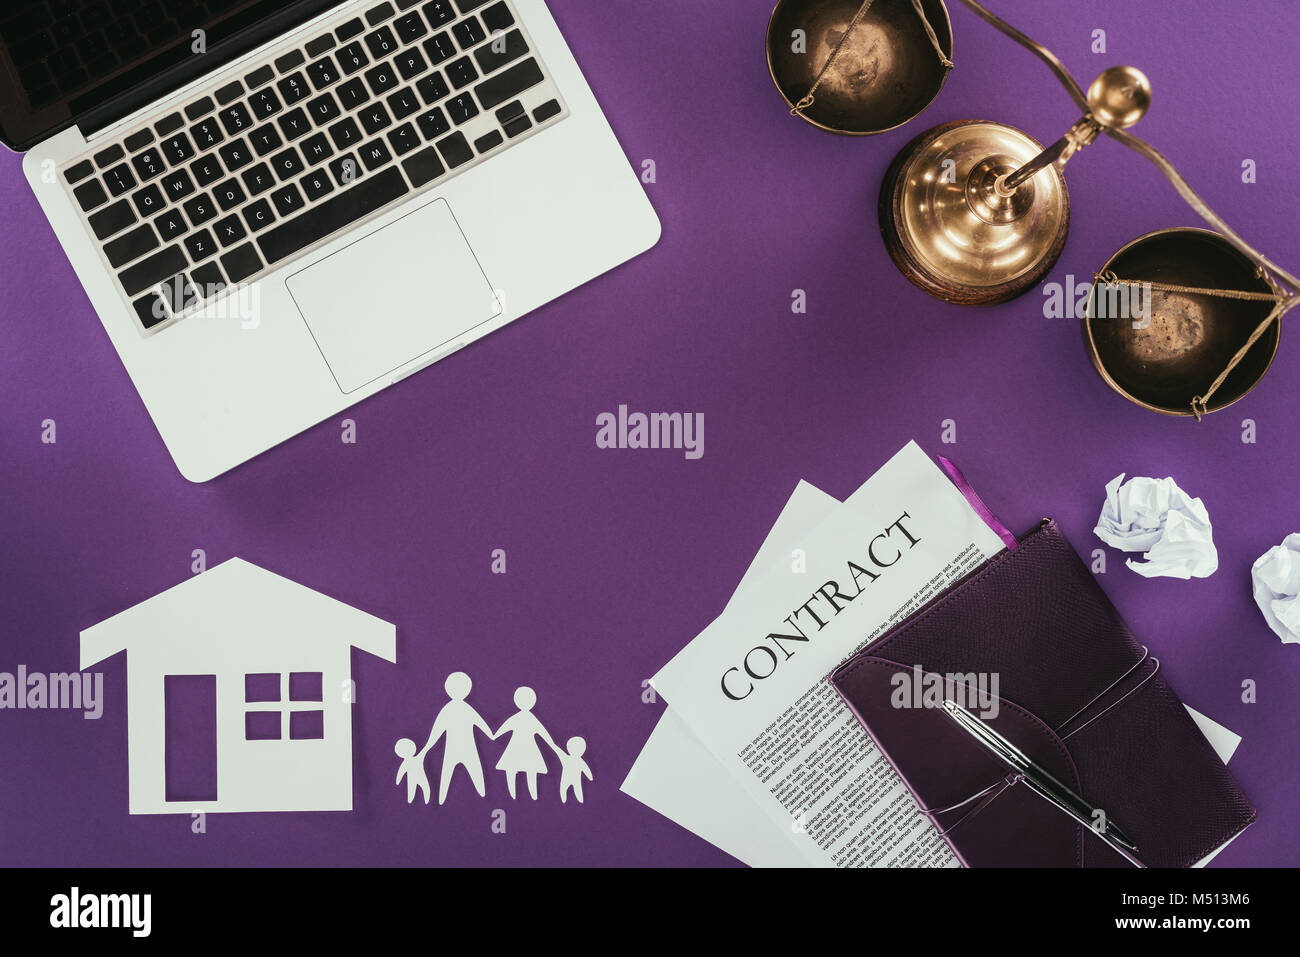 Vista superior del trabajo con empresas de seguros del hogar y de la familia oncept sobre púrpura mesa Foto de stock